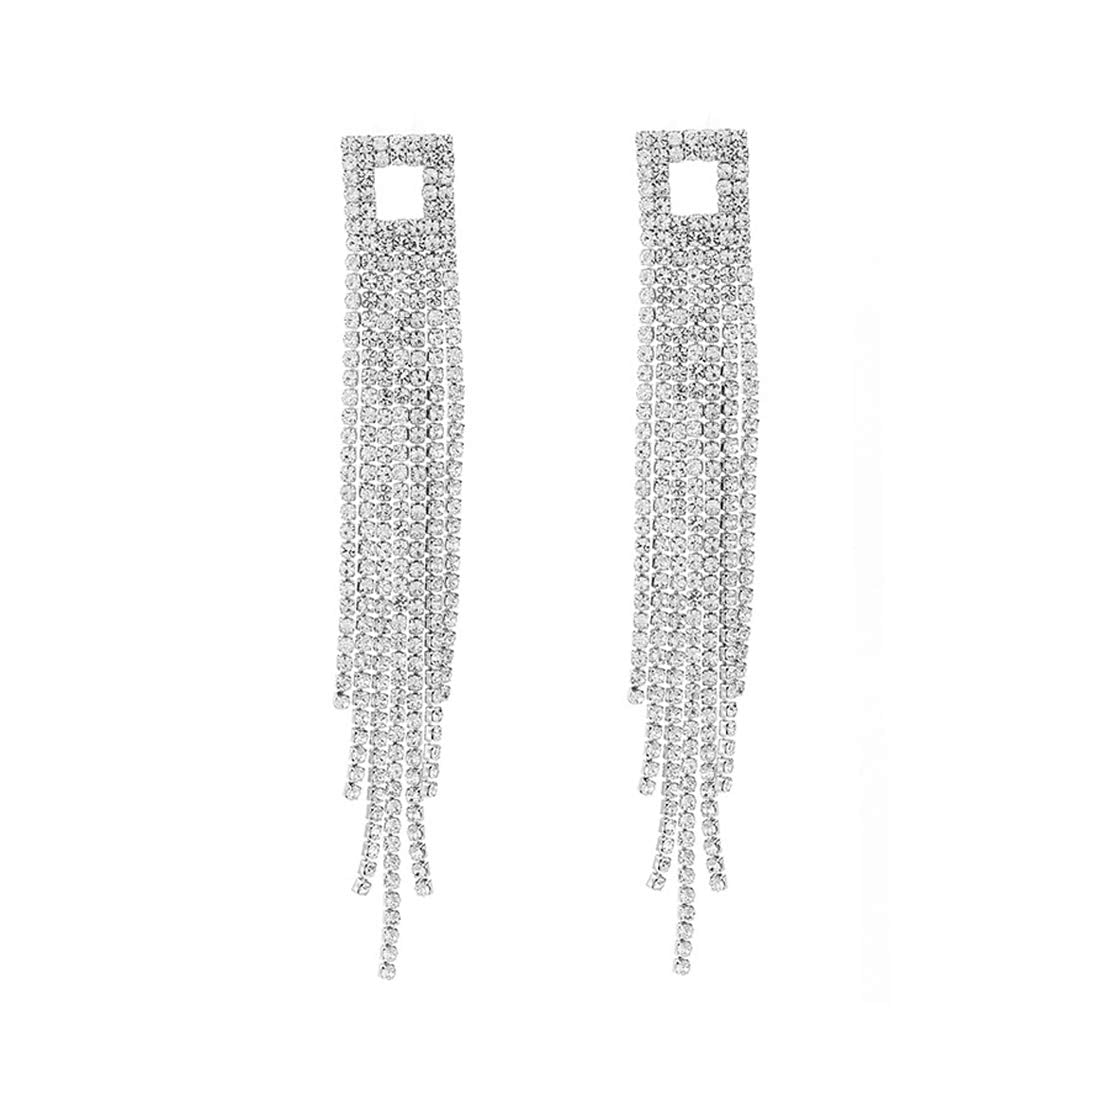 Yellow Chimes Earrings for Women & Girls | Fashion White Crystal Studded Dangler Earring | Silver Toned Western Long Dangler Earrings | Birthday & Anniversary Gift